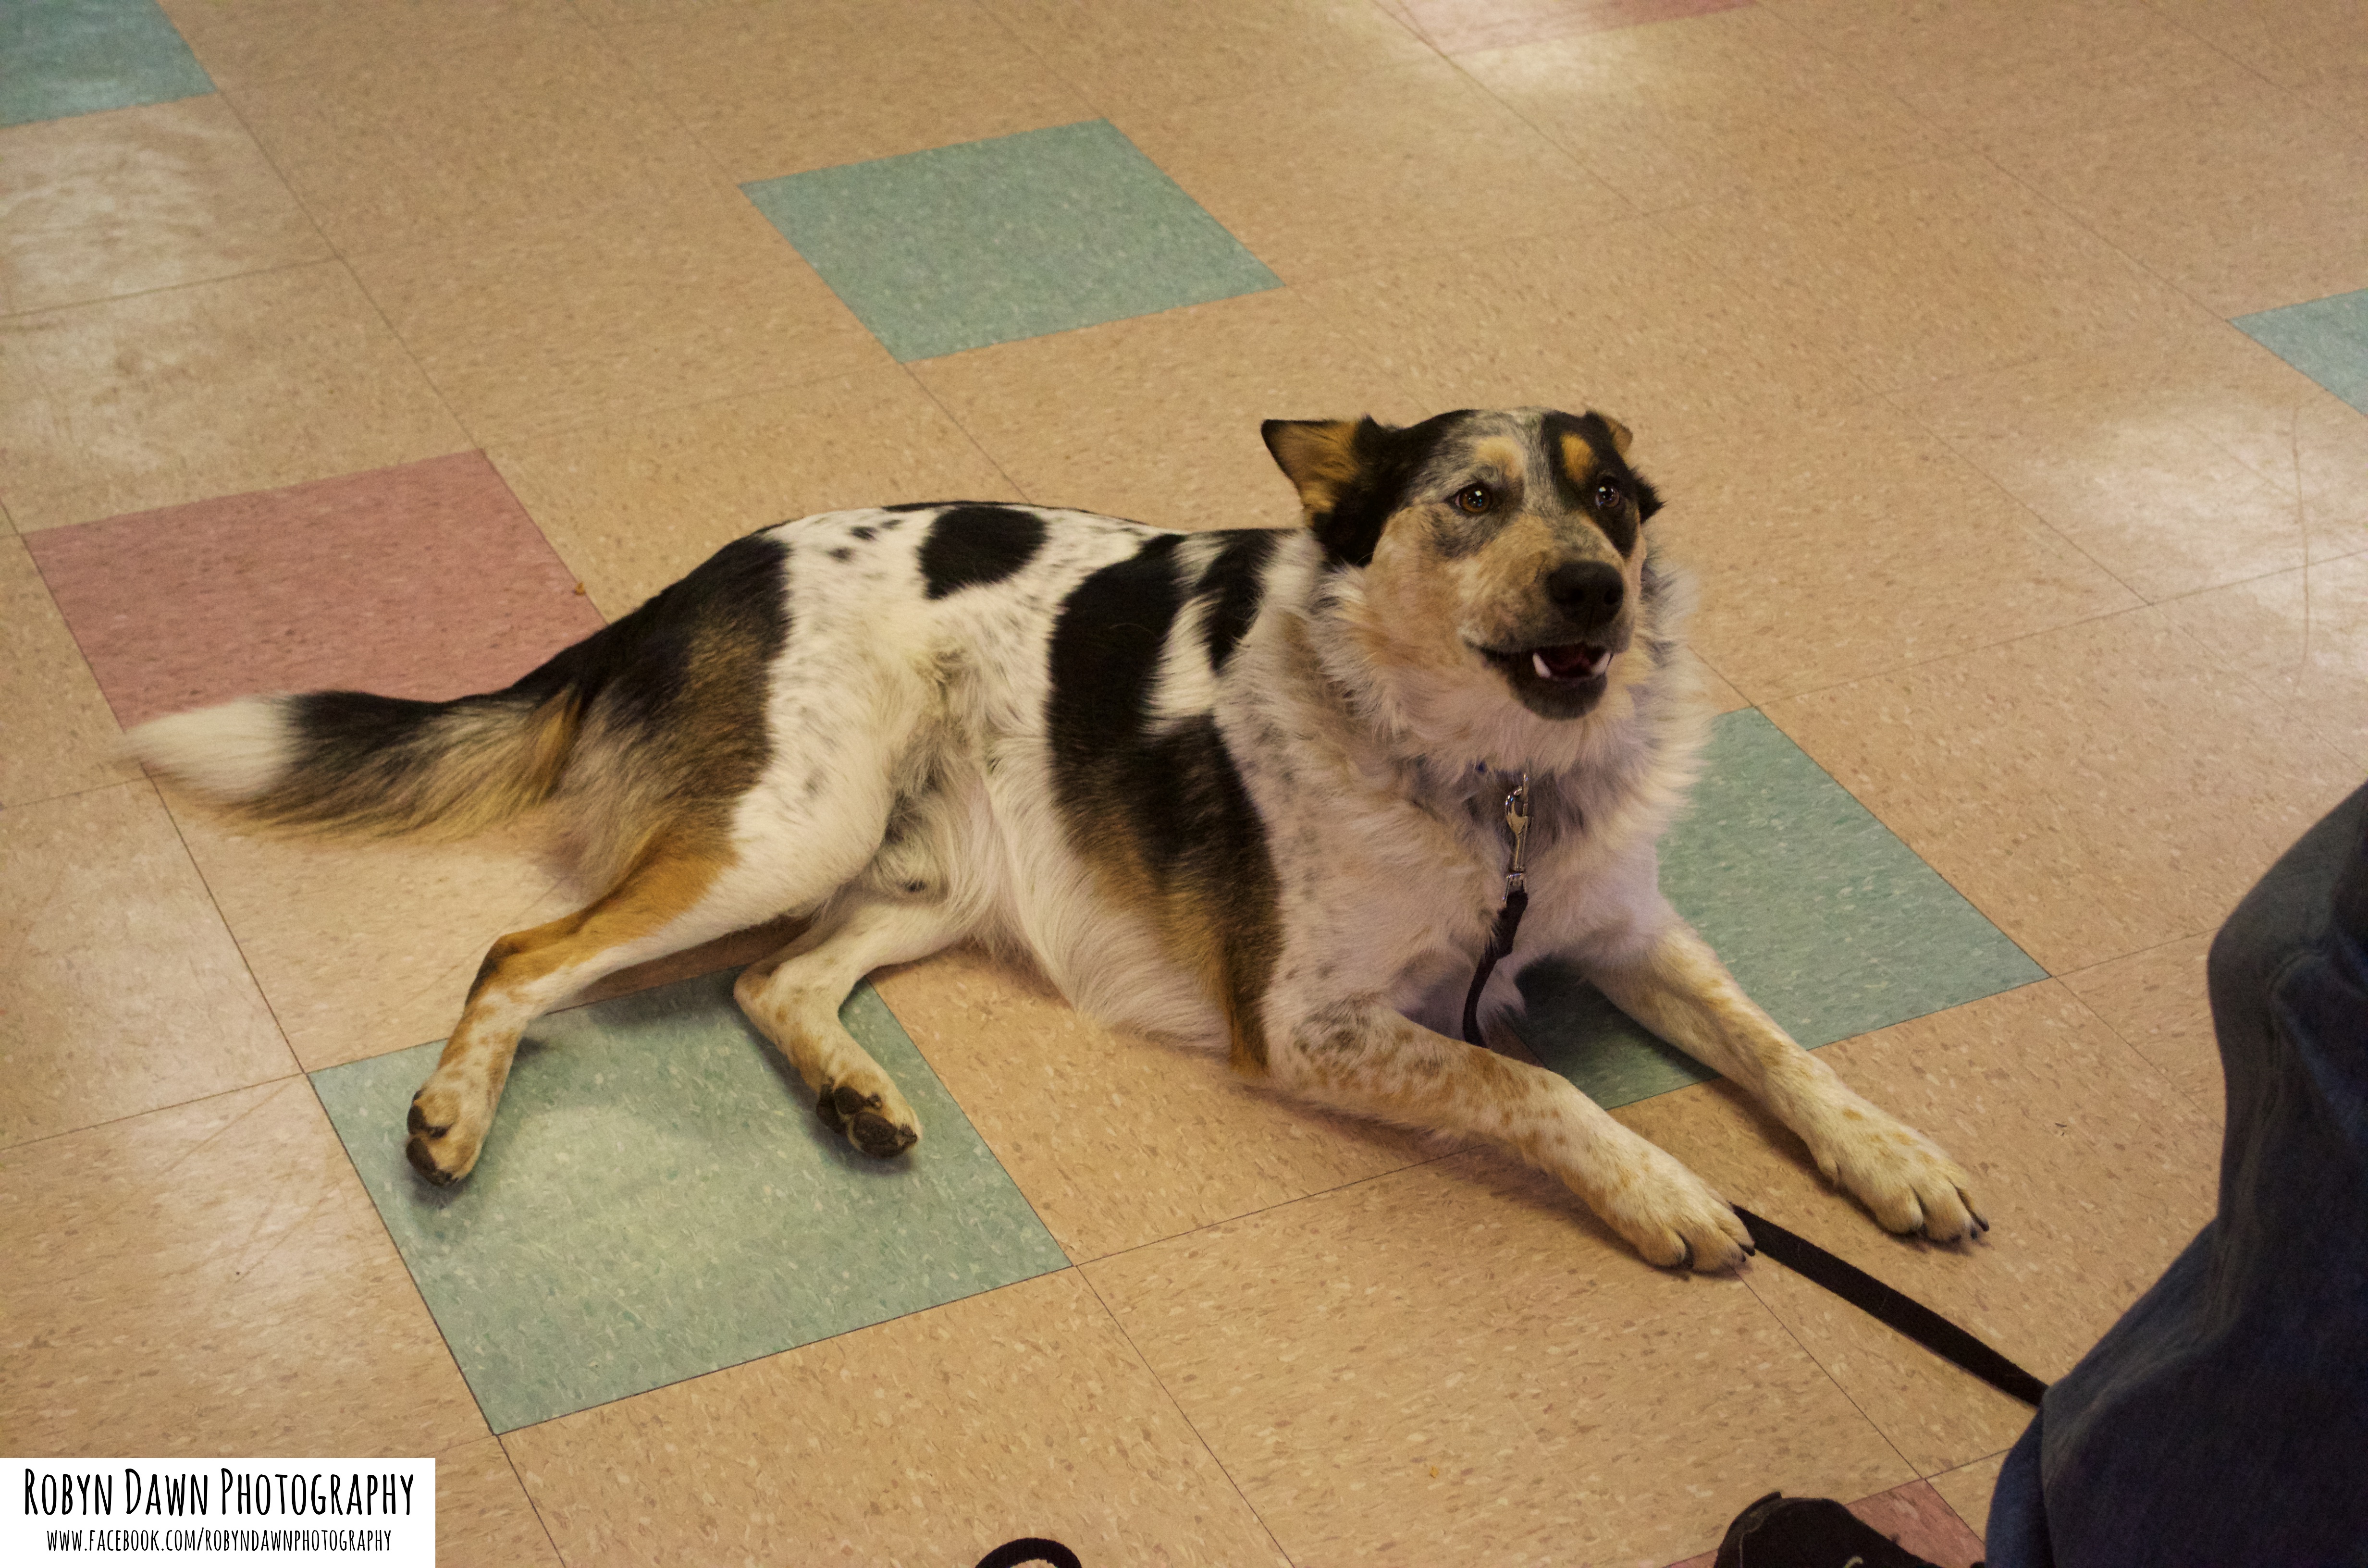 My Dog Hates Company and I am Super Stressed! – Dog Training – Salt Lake City